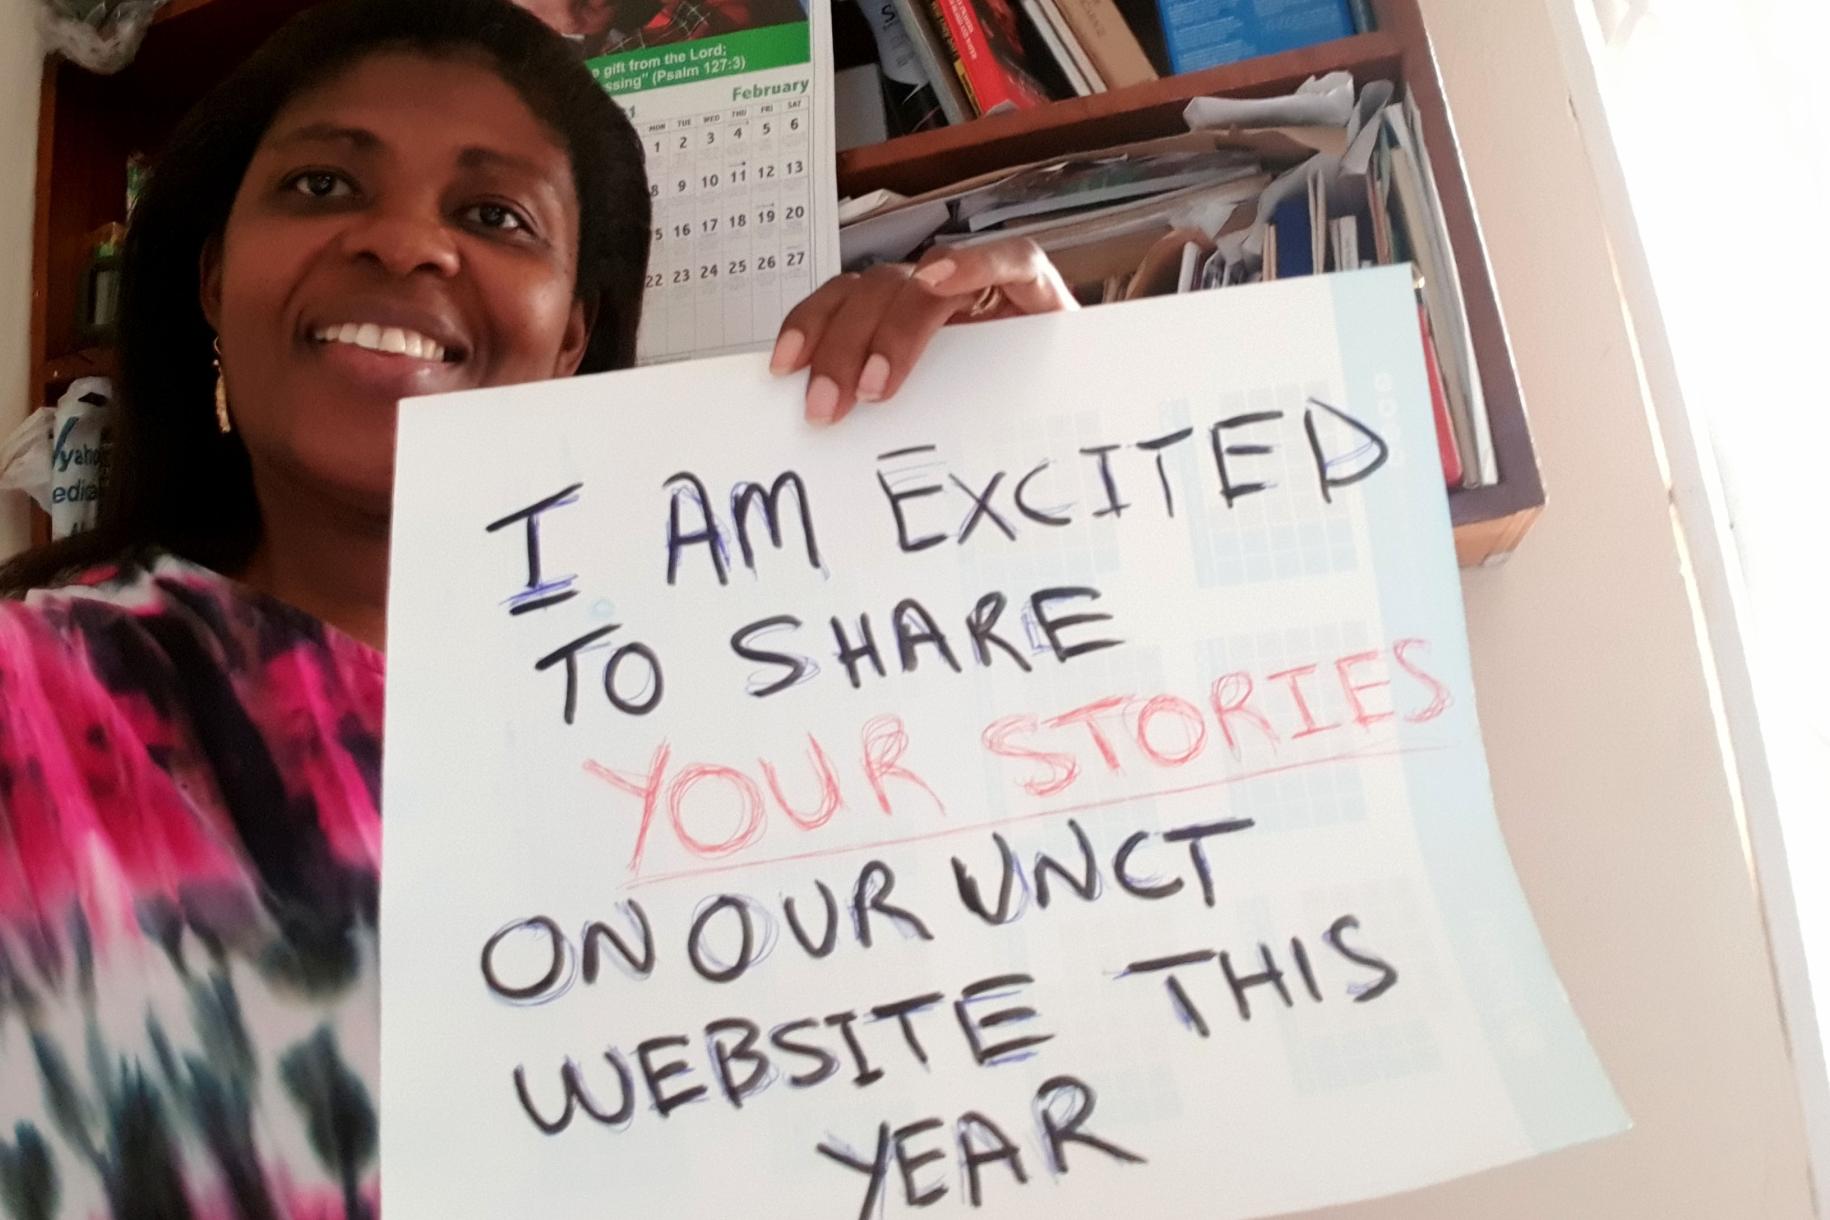 Una mujer con una sonrisa, llena de orgullo, sostiene un letrero que indica que este año está emocionada de compartir más historias de personas del país en el sitio web del equipo de las Naciones Unidas en Ghana.